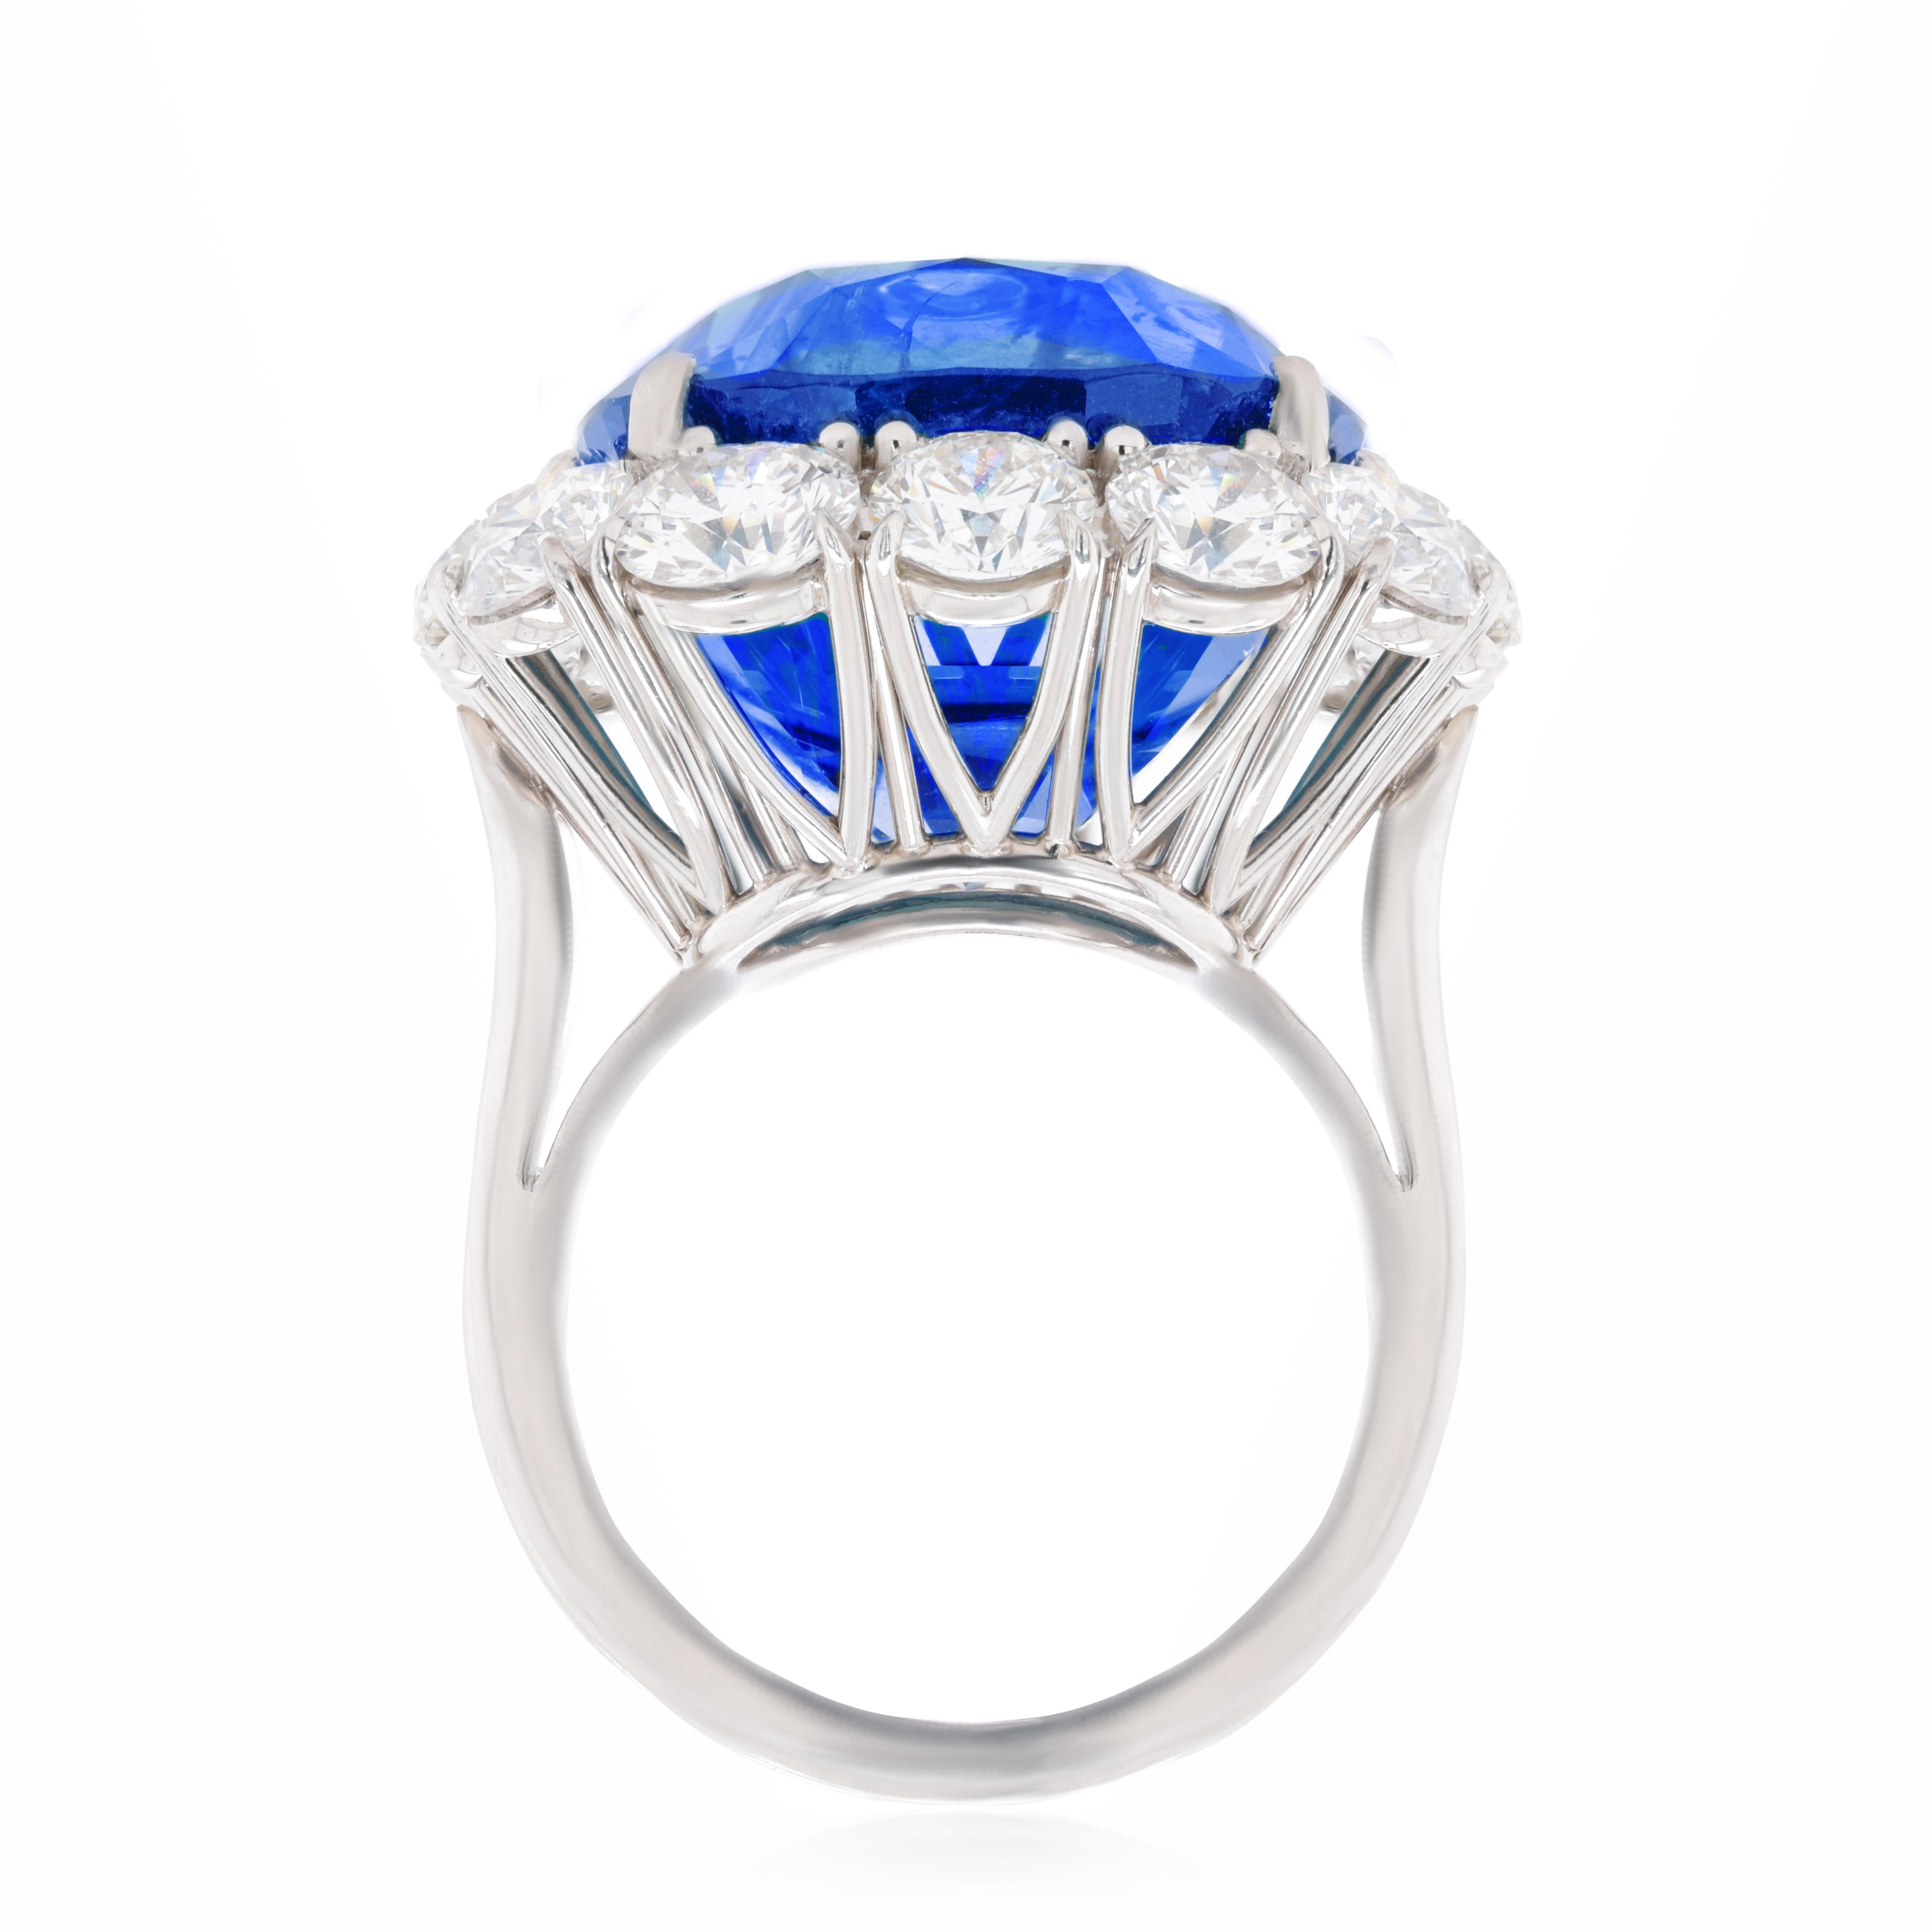 Ring aus Platin mit einem blauen Saphir im Kissenschliff von 33,25 ct, GIA-zertifiziert, aus Sri Lanka, umgeben von runden Diamanten von 5,60 ct.
Diana M. ist seit über 35 Jahren ein führender Anbieter von hochwertigem Schmuck.
Diana M ist eine